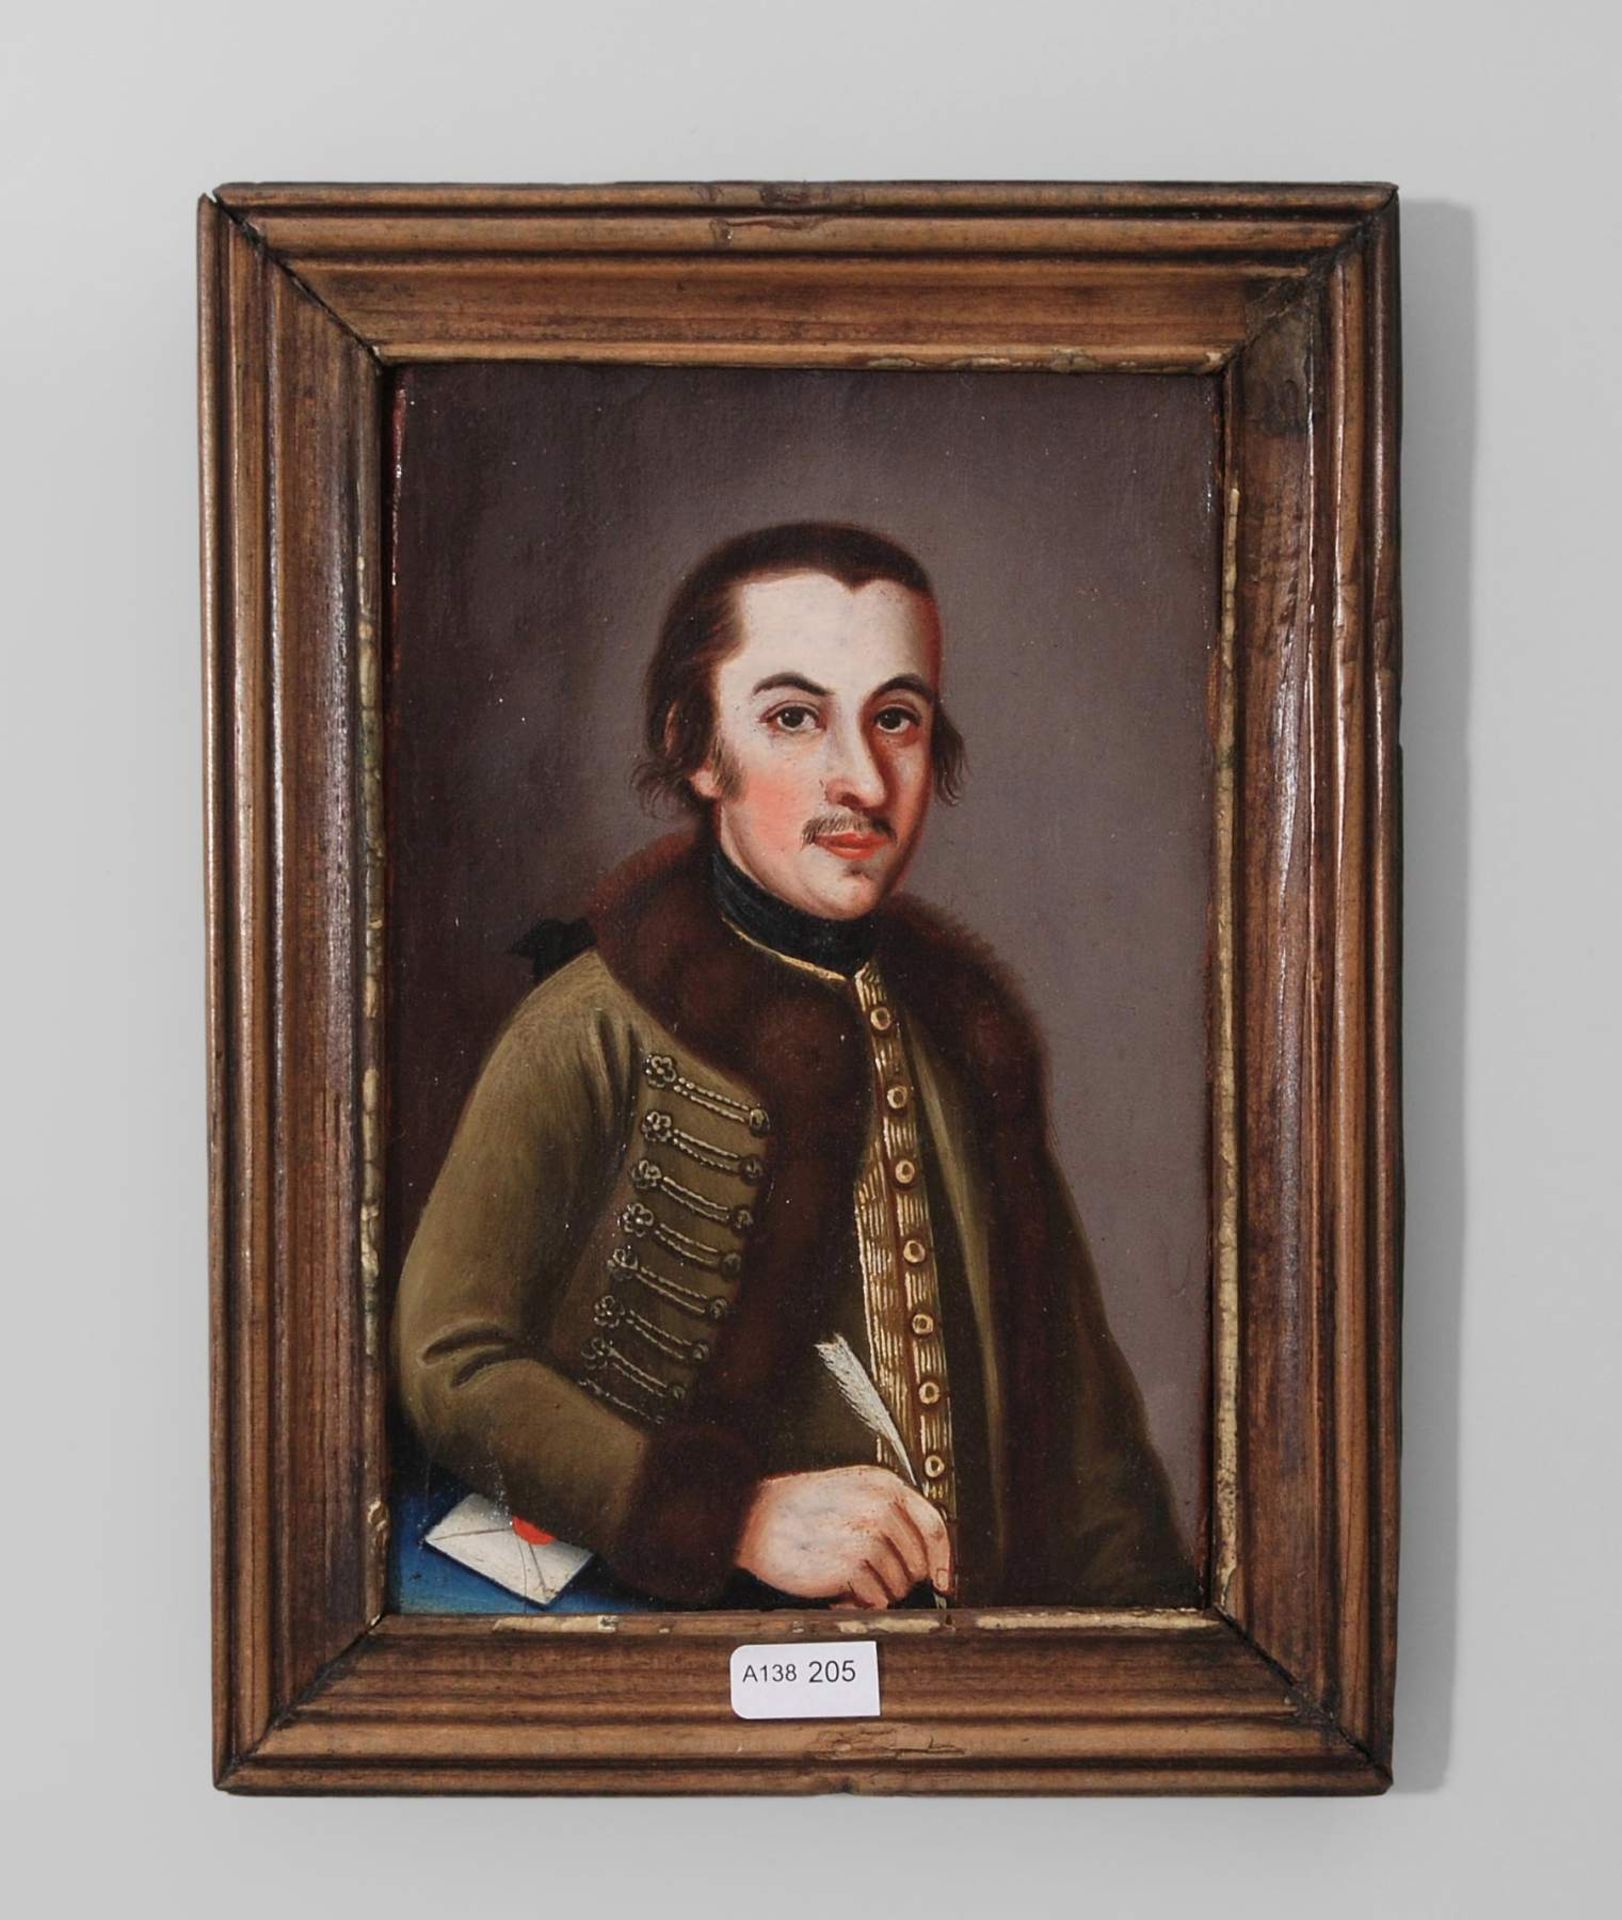 Herrenporträt
19.Jh. Öl/Lwd auf Holz. Darstellung eines jungen Herrn in grünem, mit Pelz gesäumtem